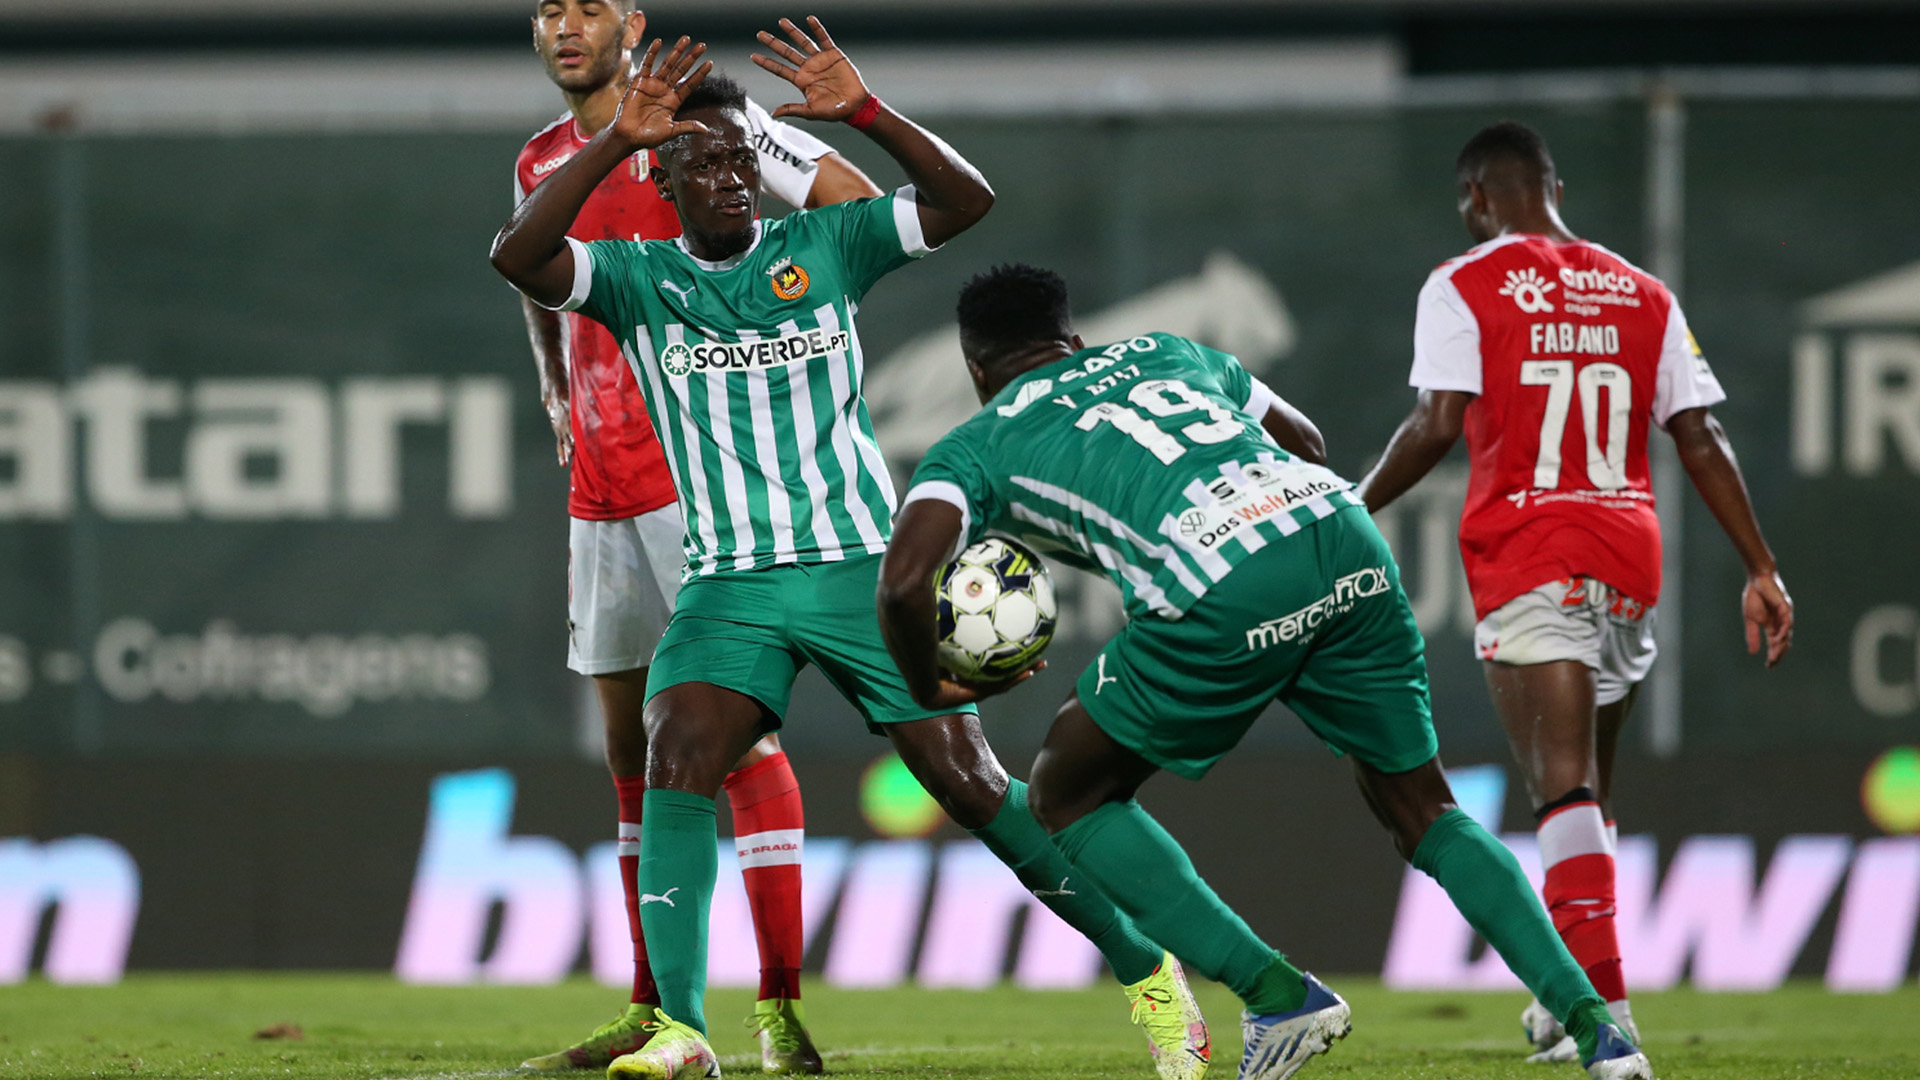 Baeza recomenda a Liga Portuguesa - Rio Ave Futebol Clube